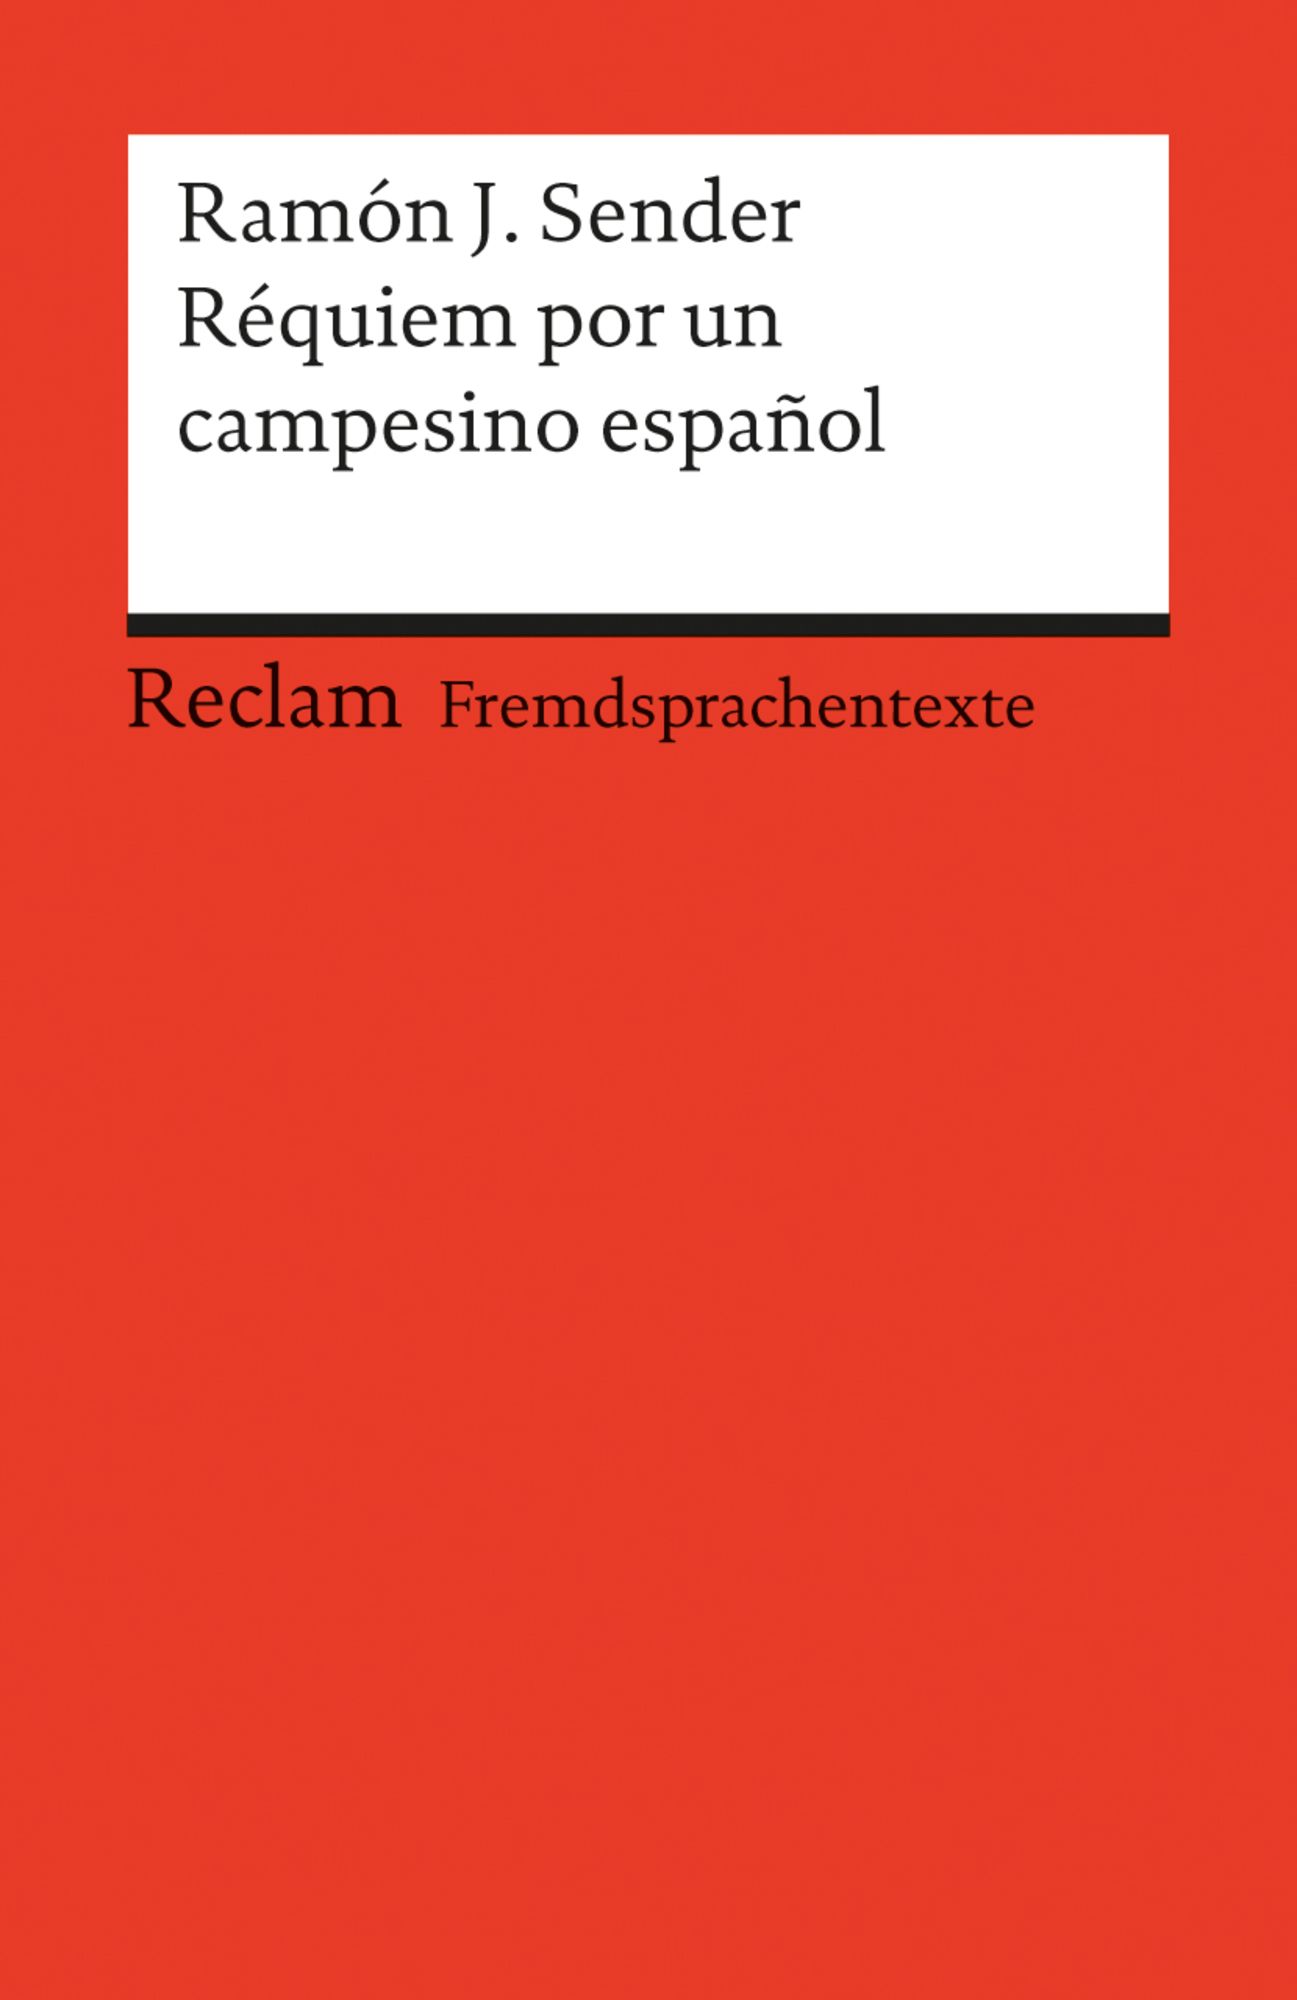 REQUIEM POR UN CAMPESINO ESPAÑOL, RAMON J. SENDER